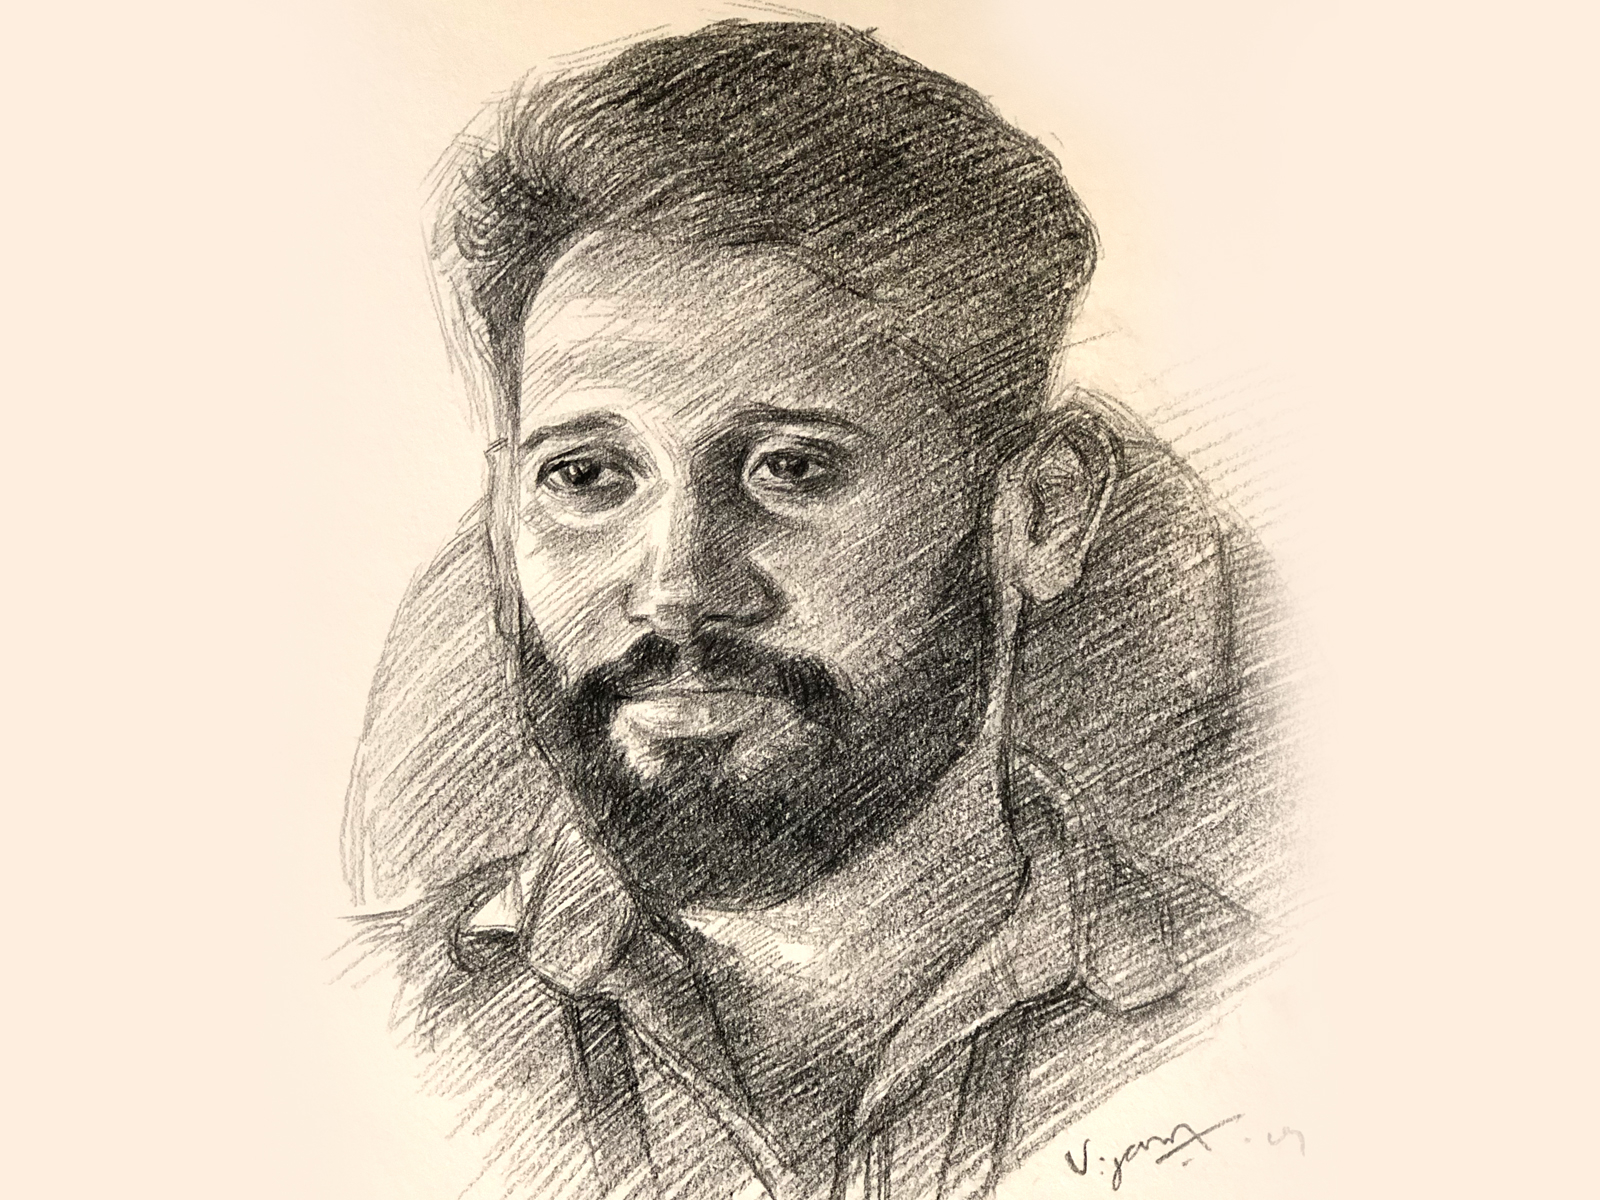 shivkumar menon on LinkedIn: #mgr #indianactor #pencildrawing #pencilsketch  #pencilart #pencilportrait…